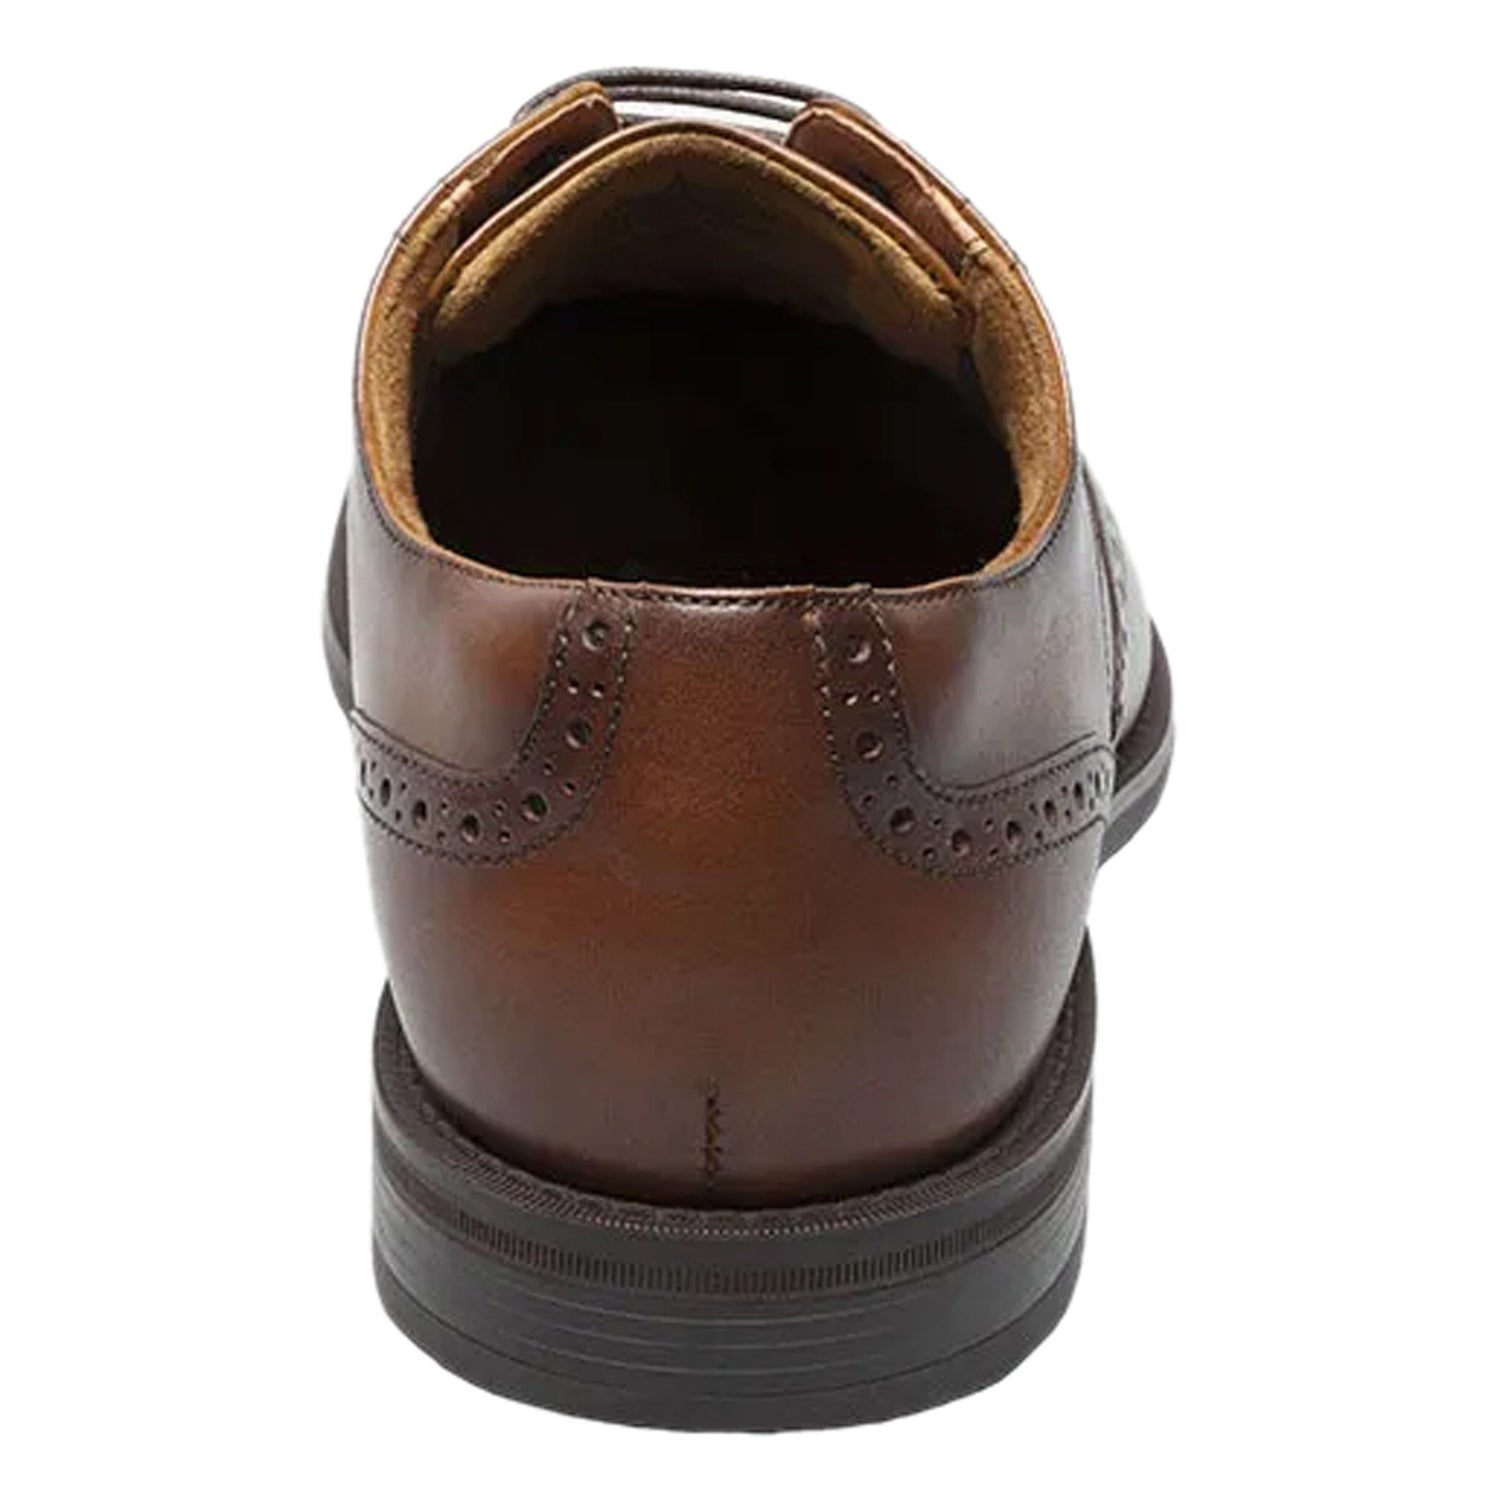 Peltz Shoes  Men's Florsheim Santucci Wingtip Oxford COGNAC 11772-221